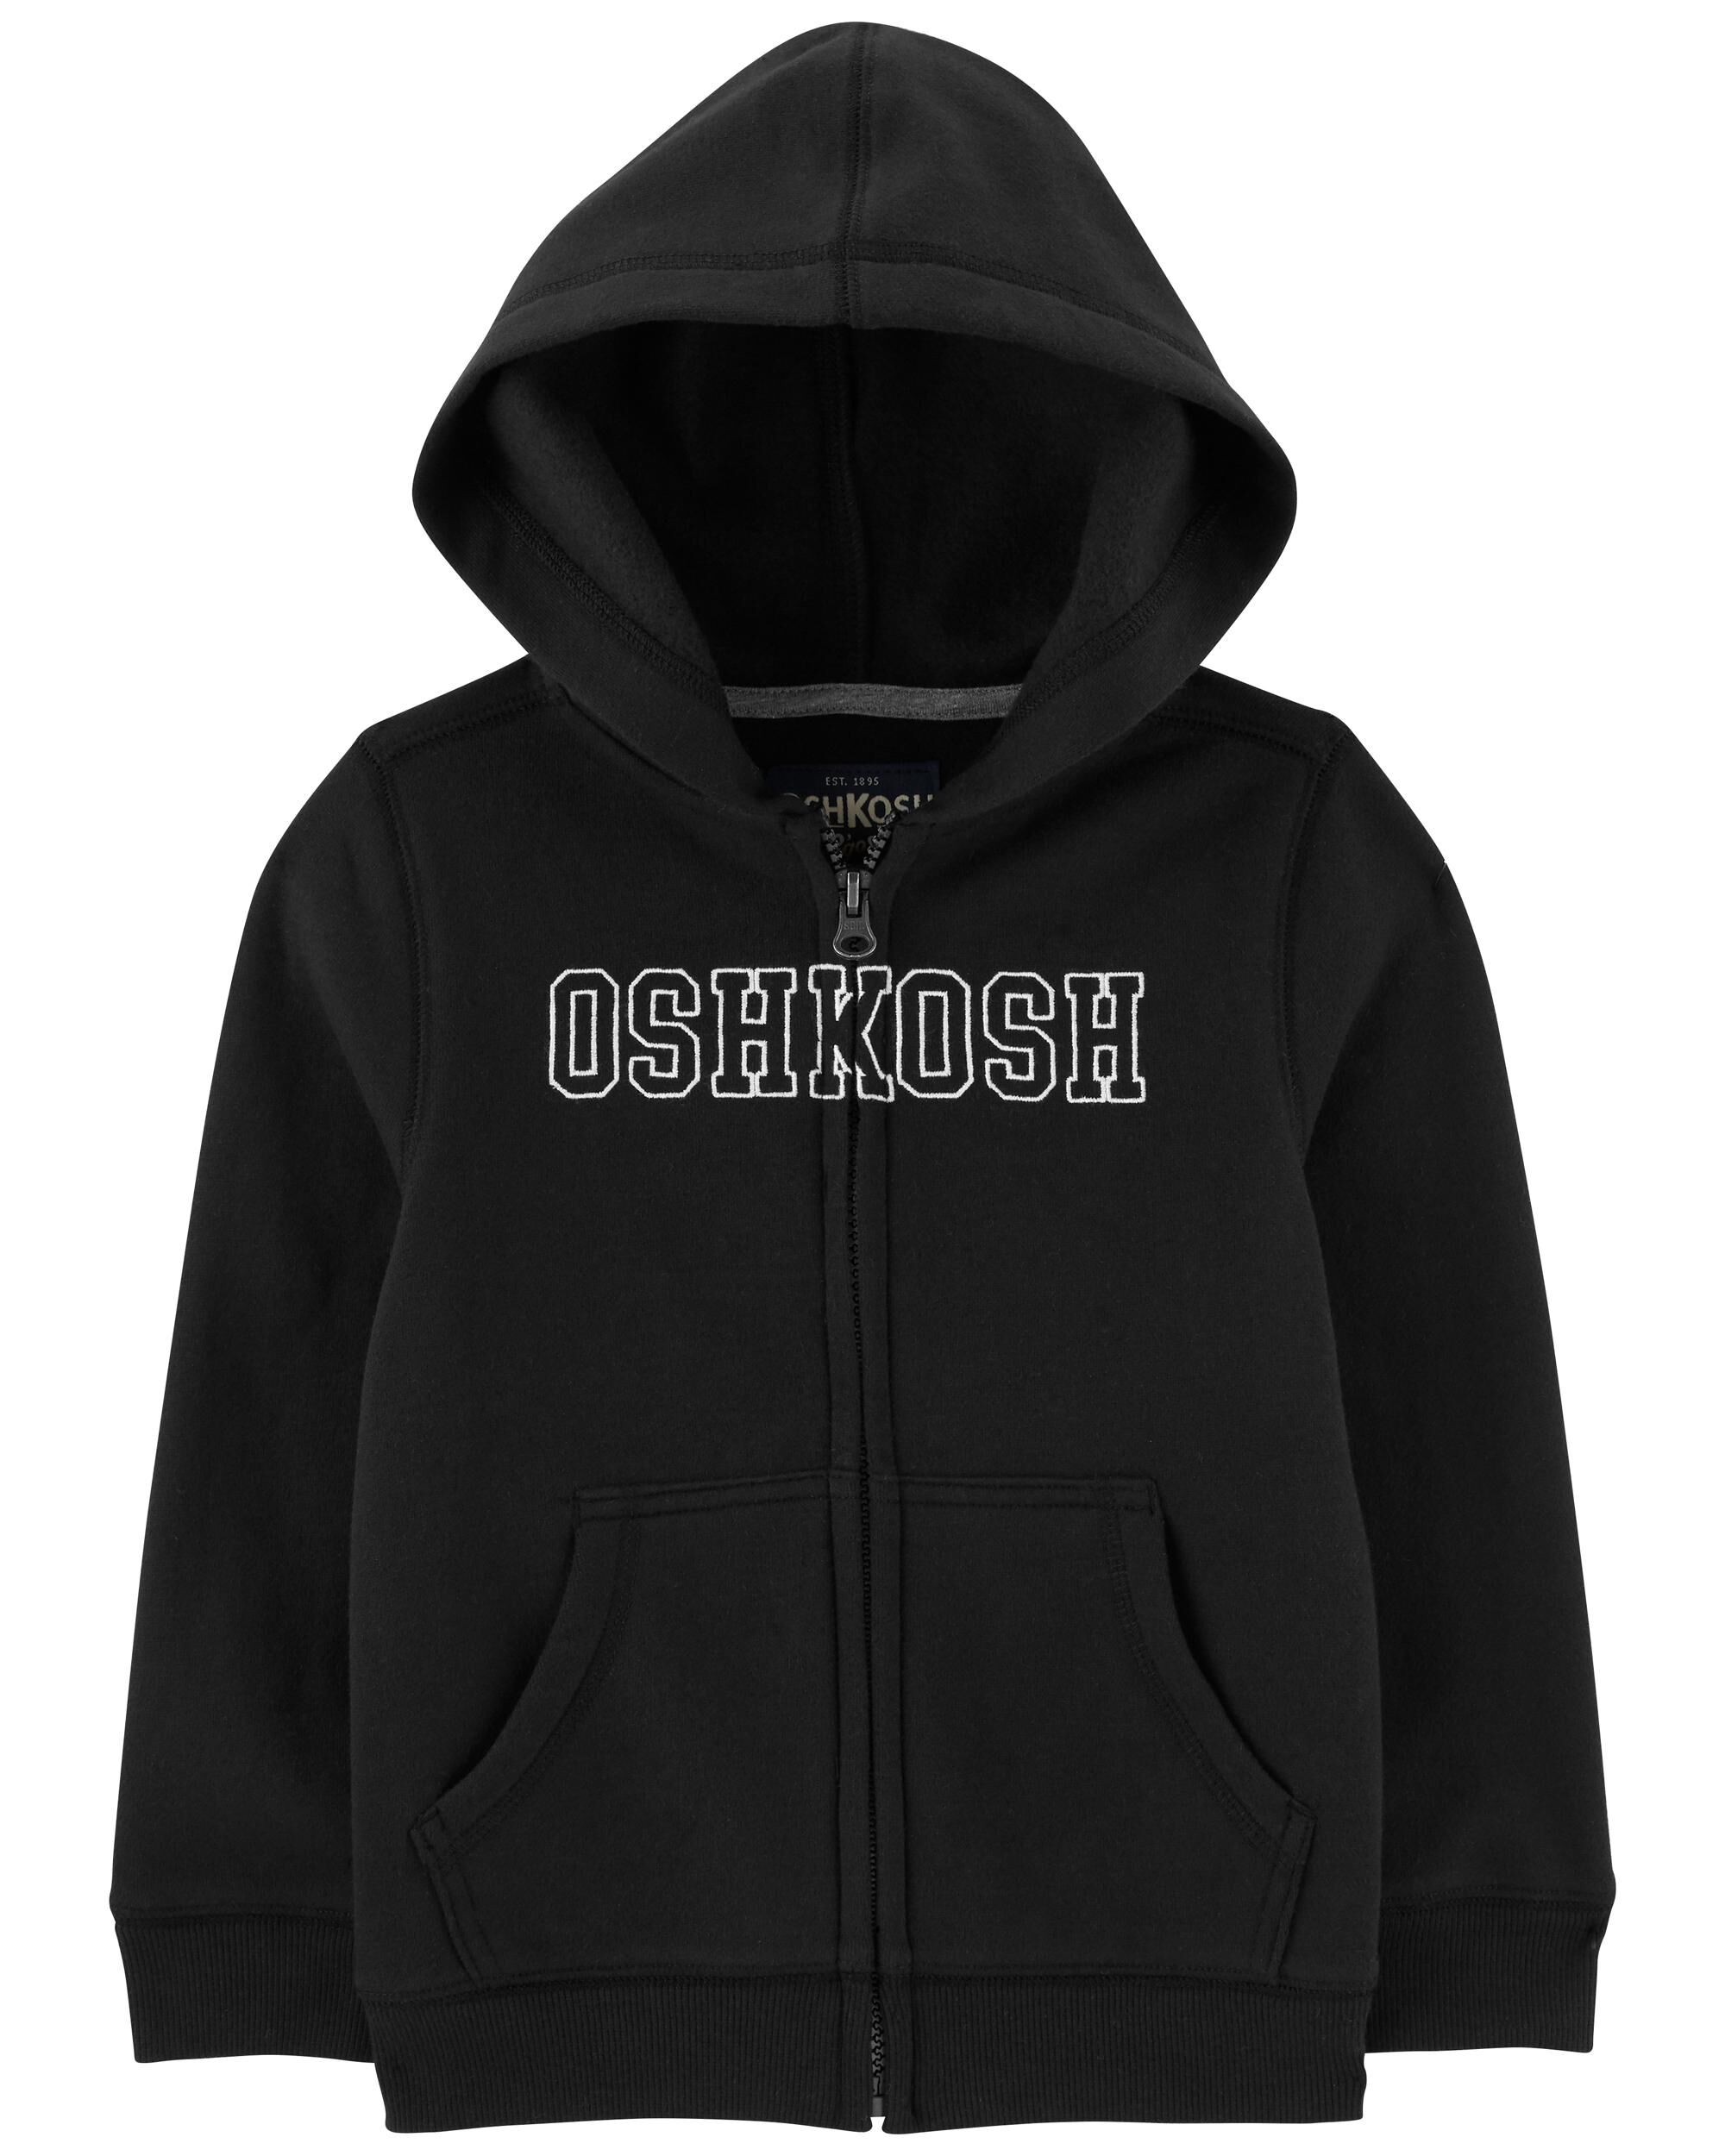 Carters OshKosh Logo Zip Jacket